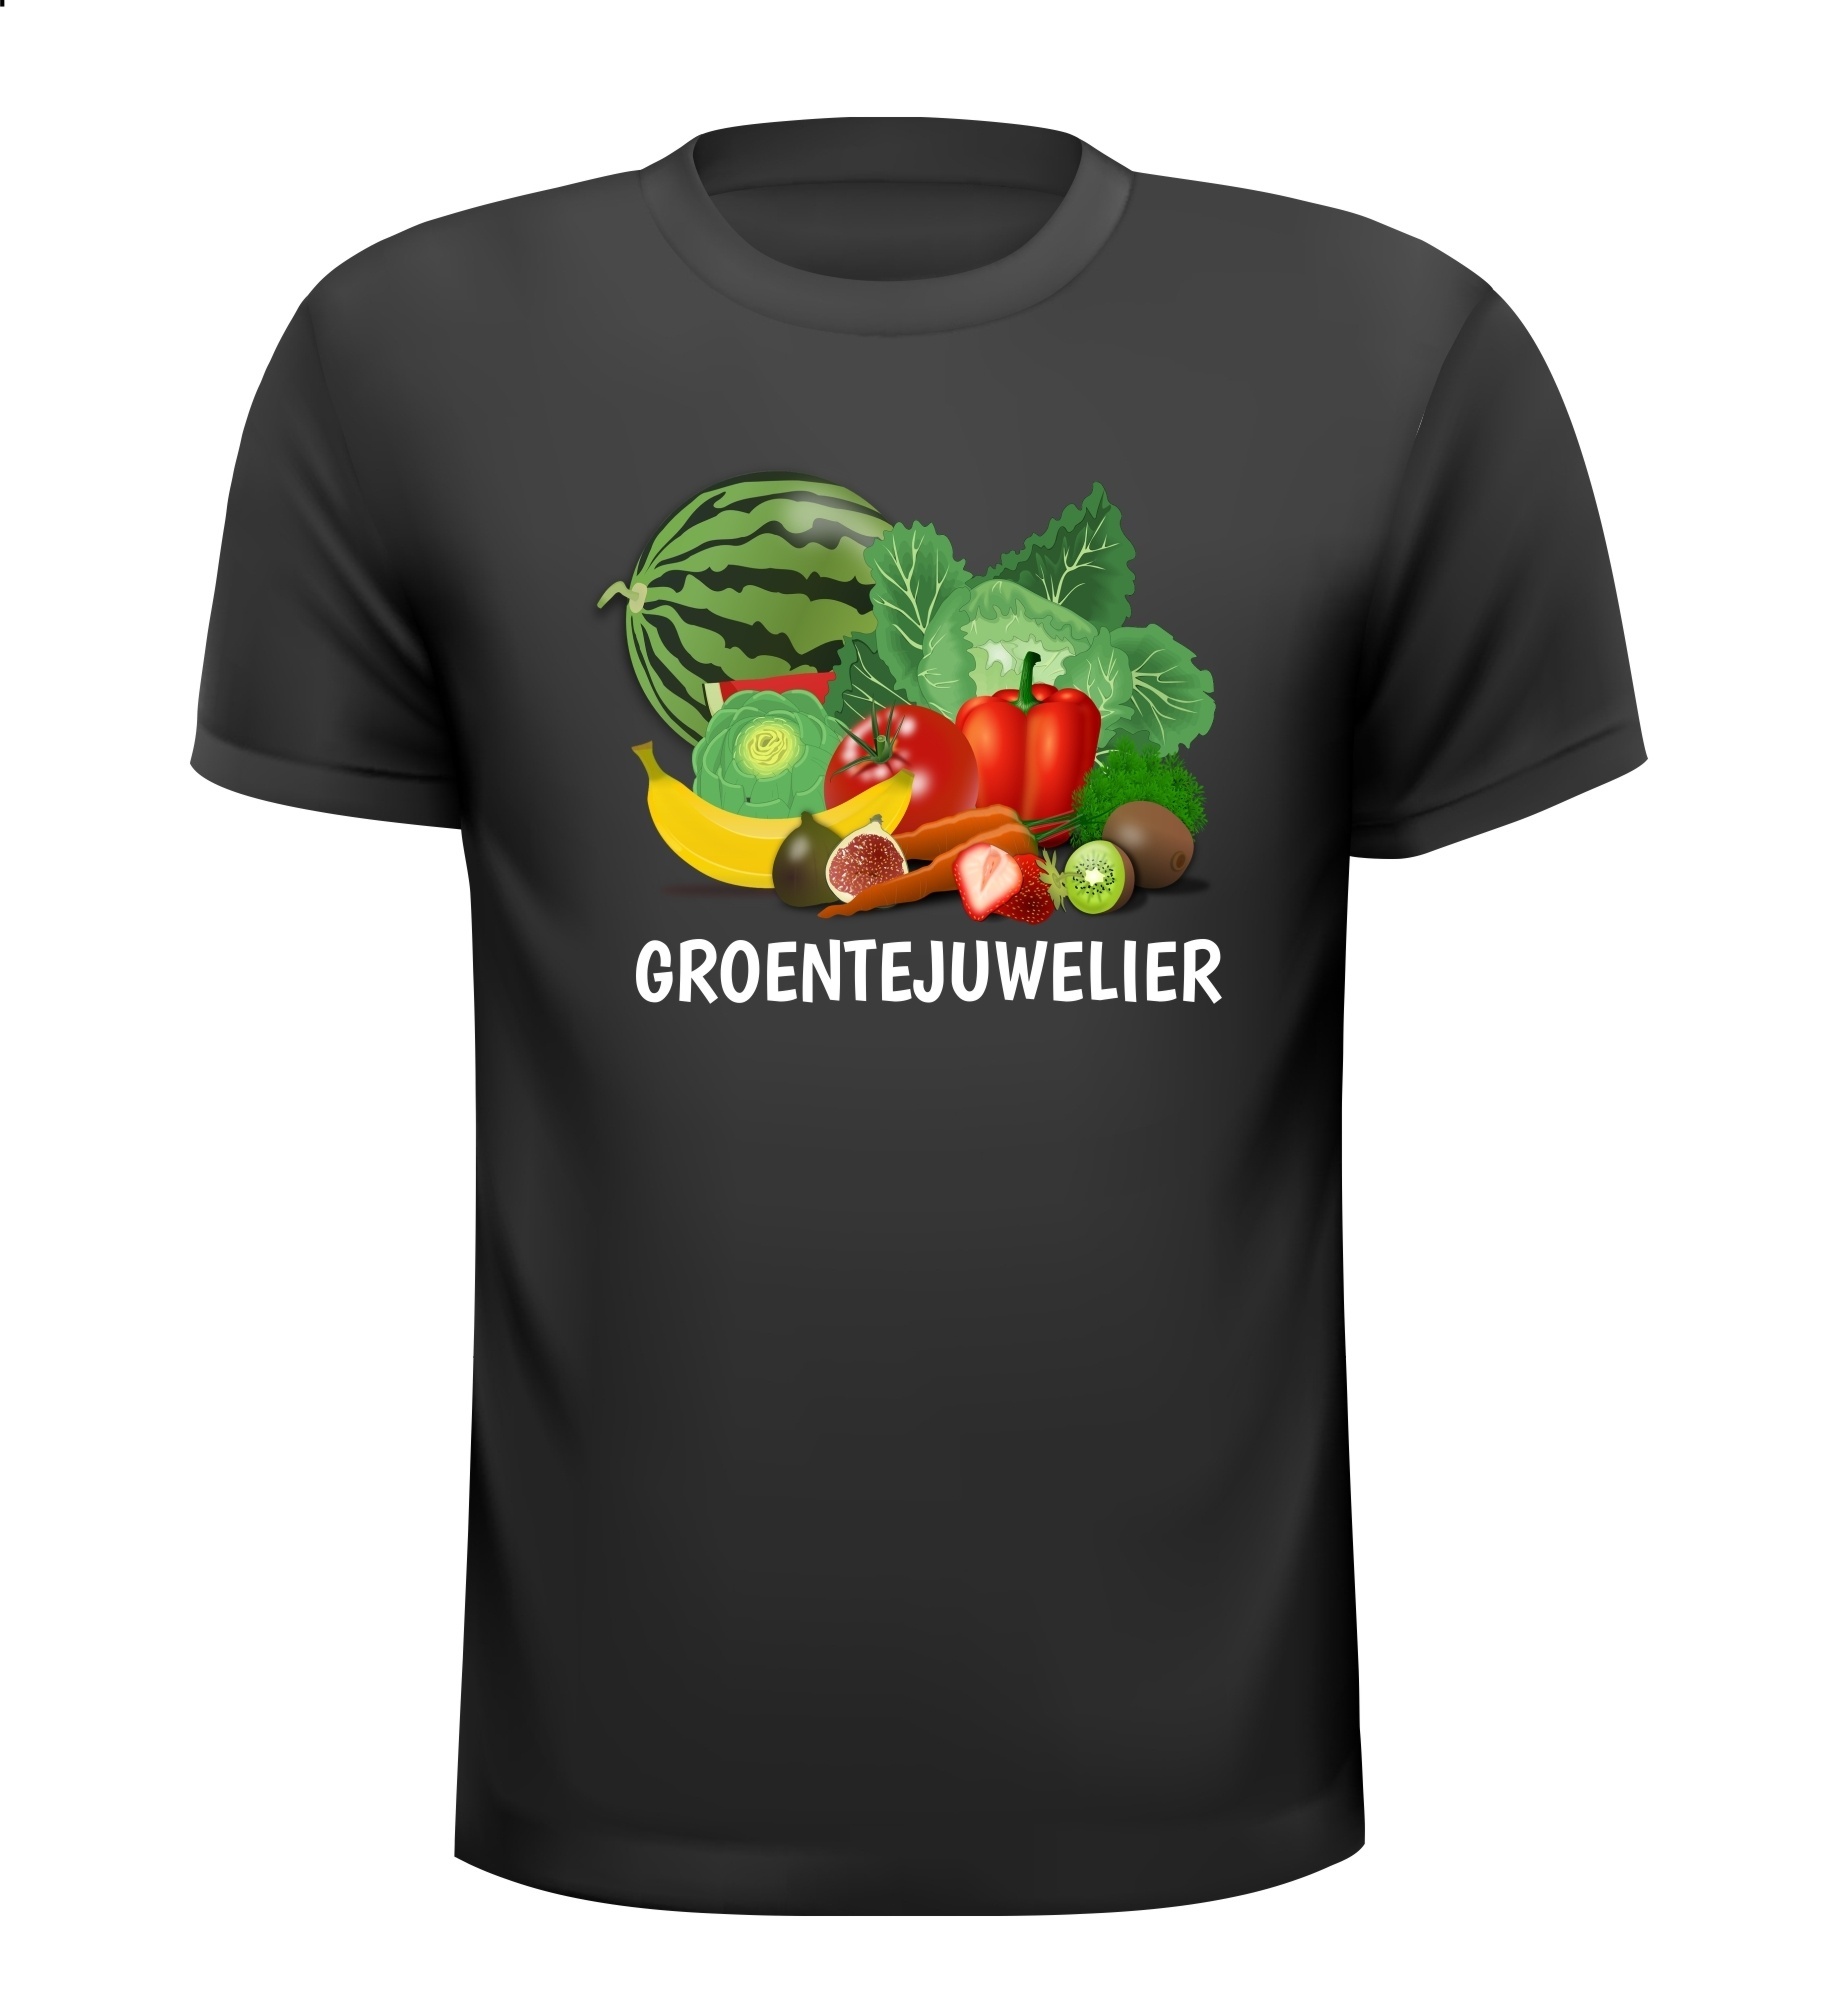 groentejuwelier groenteboer fruit groenten vers grappig leuk T-shirt groentevrouw